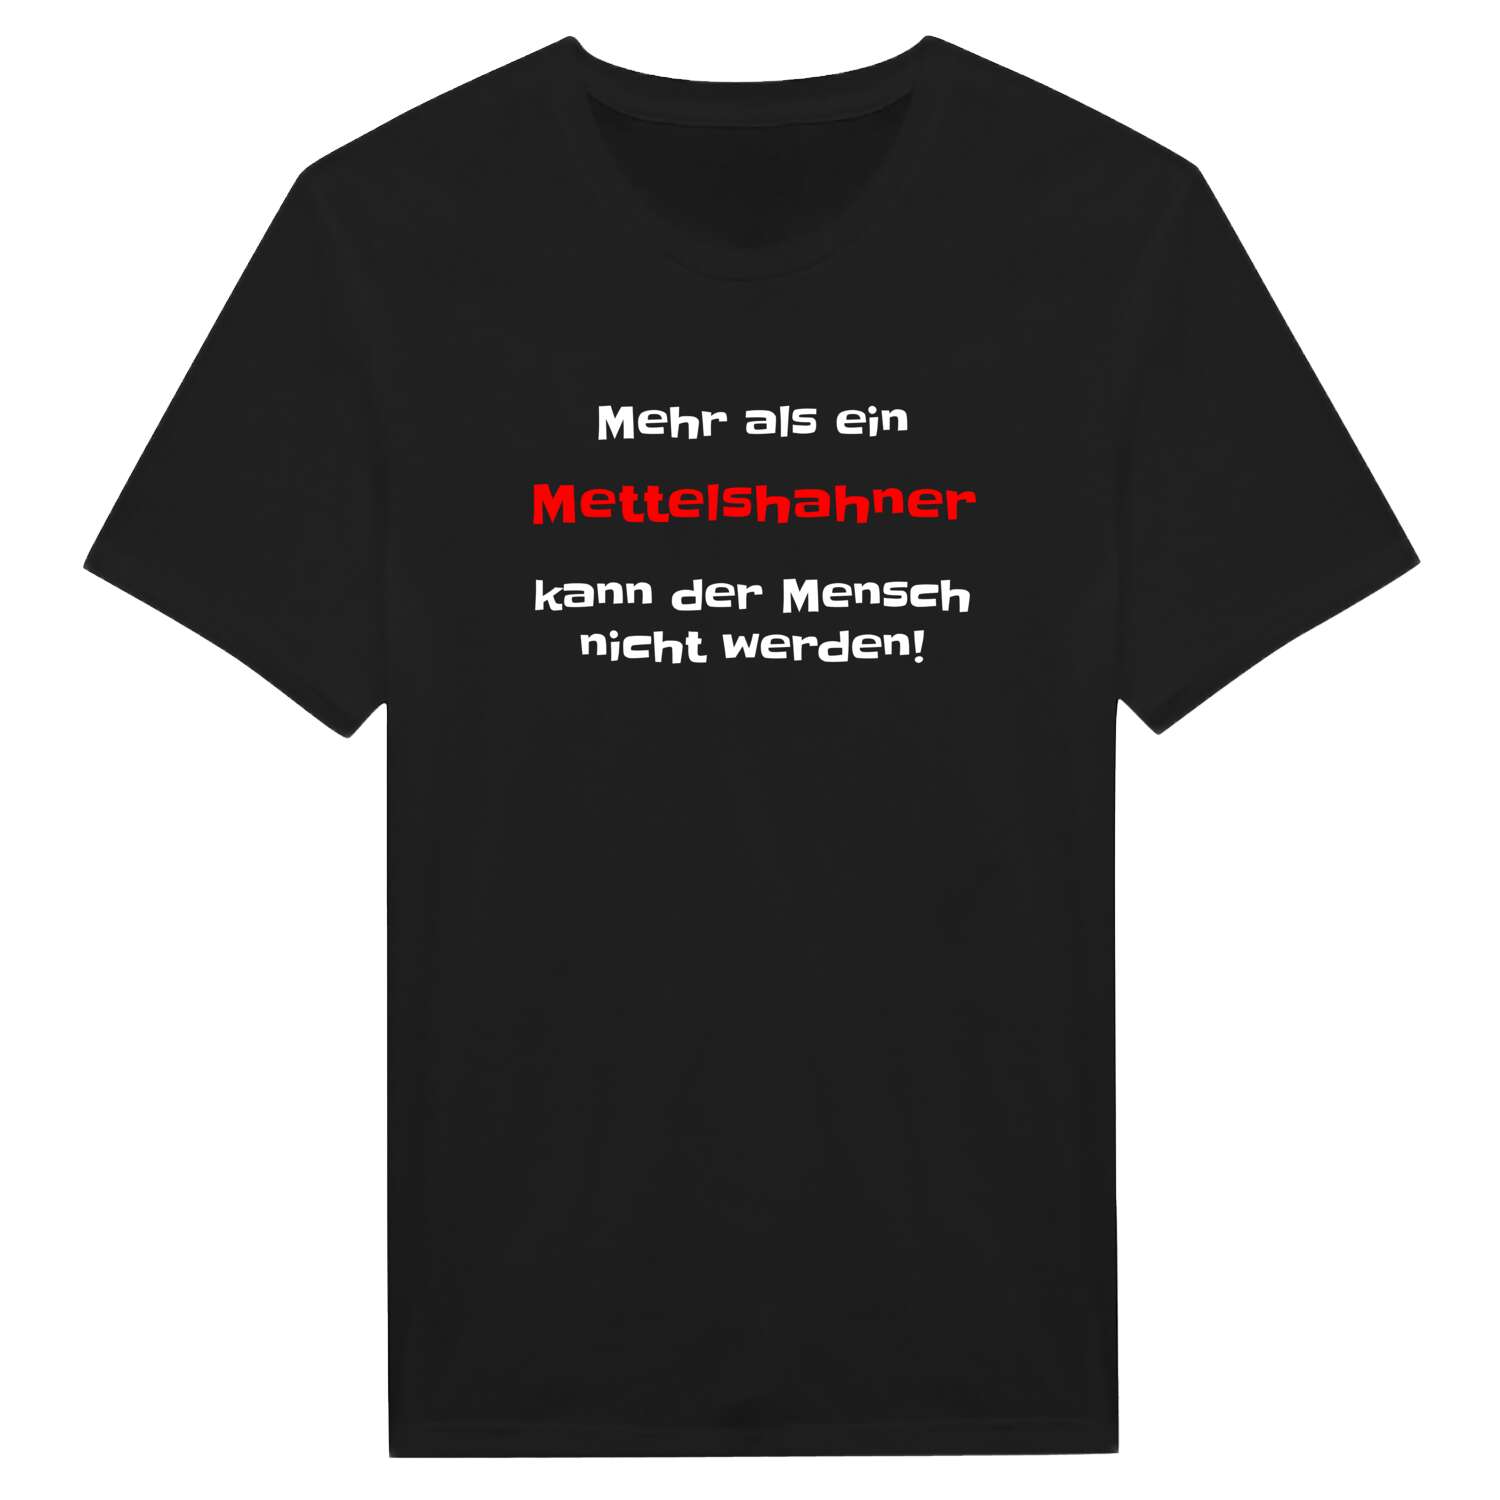 Mettelshahn T-Shirt »Mehr als ein«